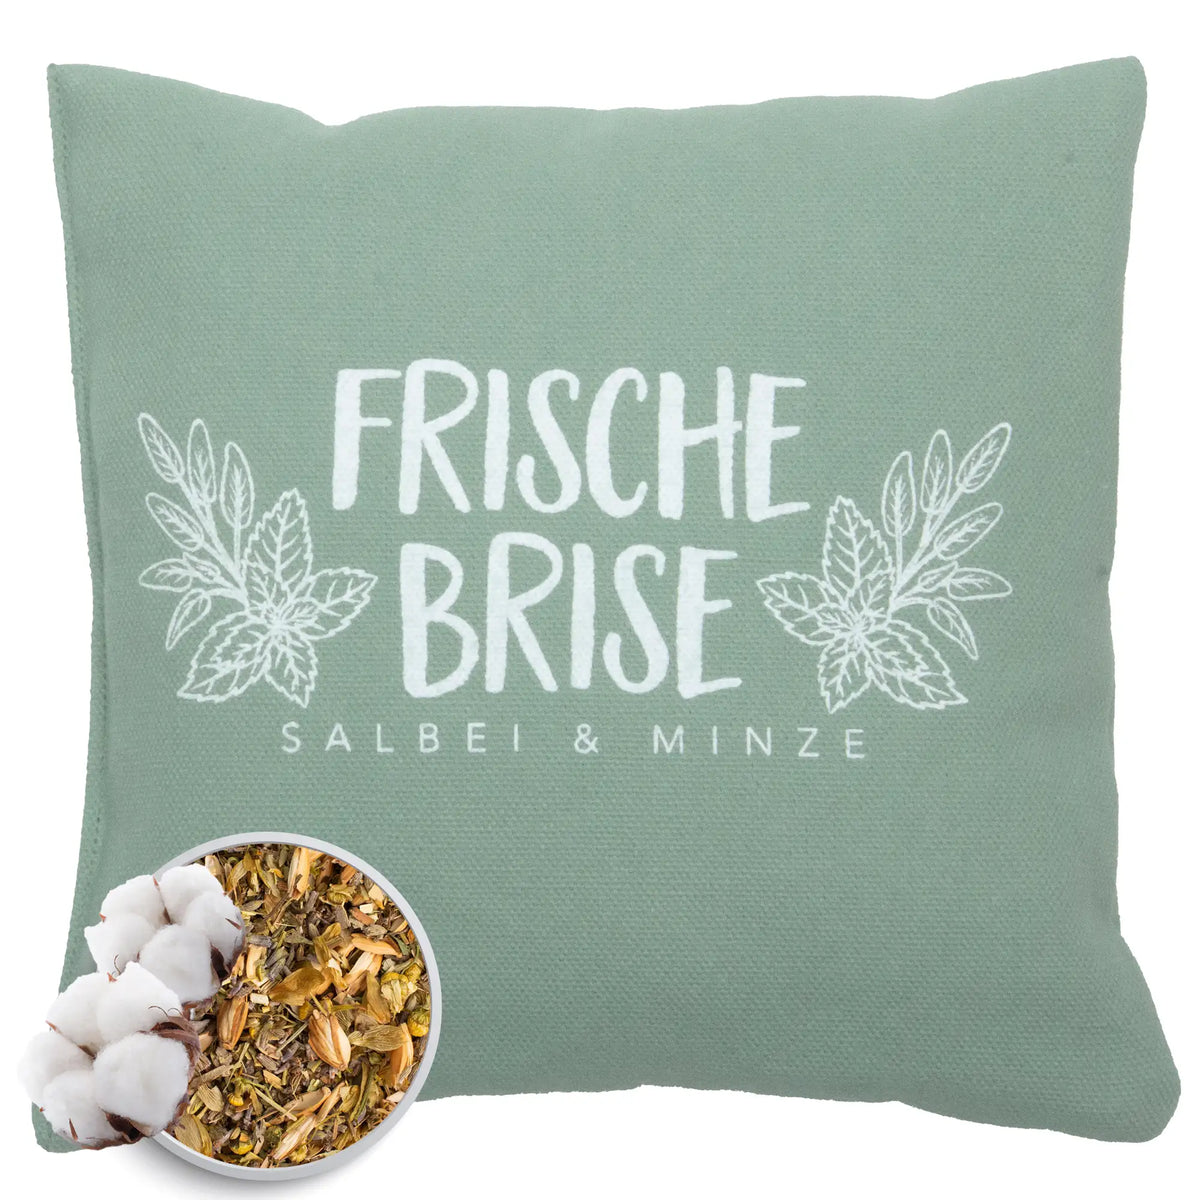 Kräuterkissen 20x20cm "Frische Brise - Salbei & Minze", Lindgrün